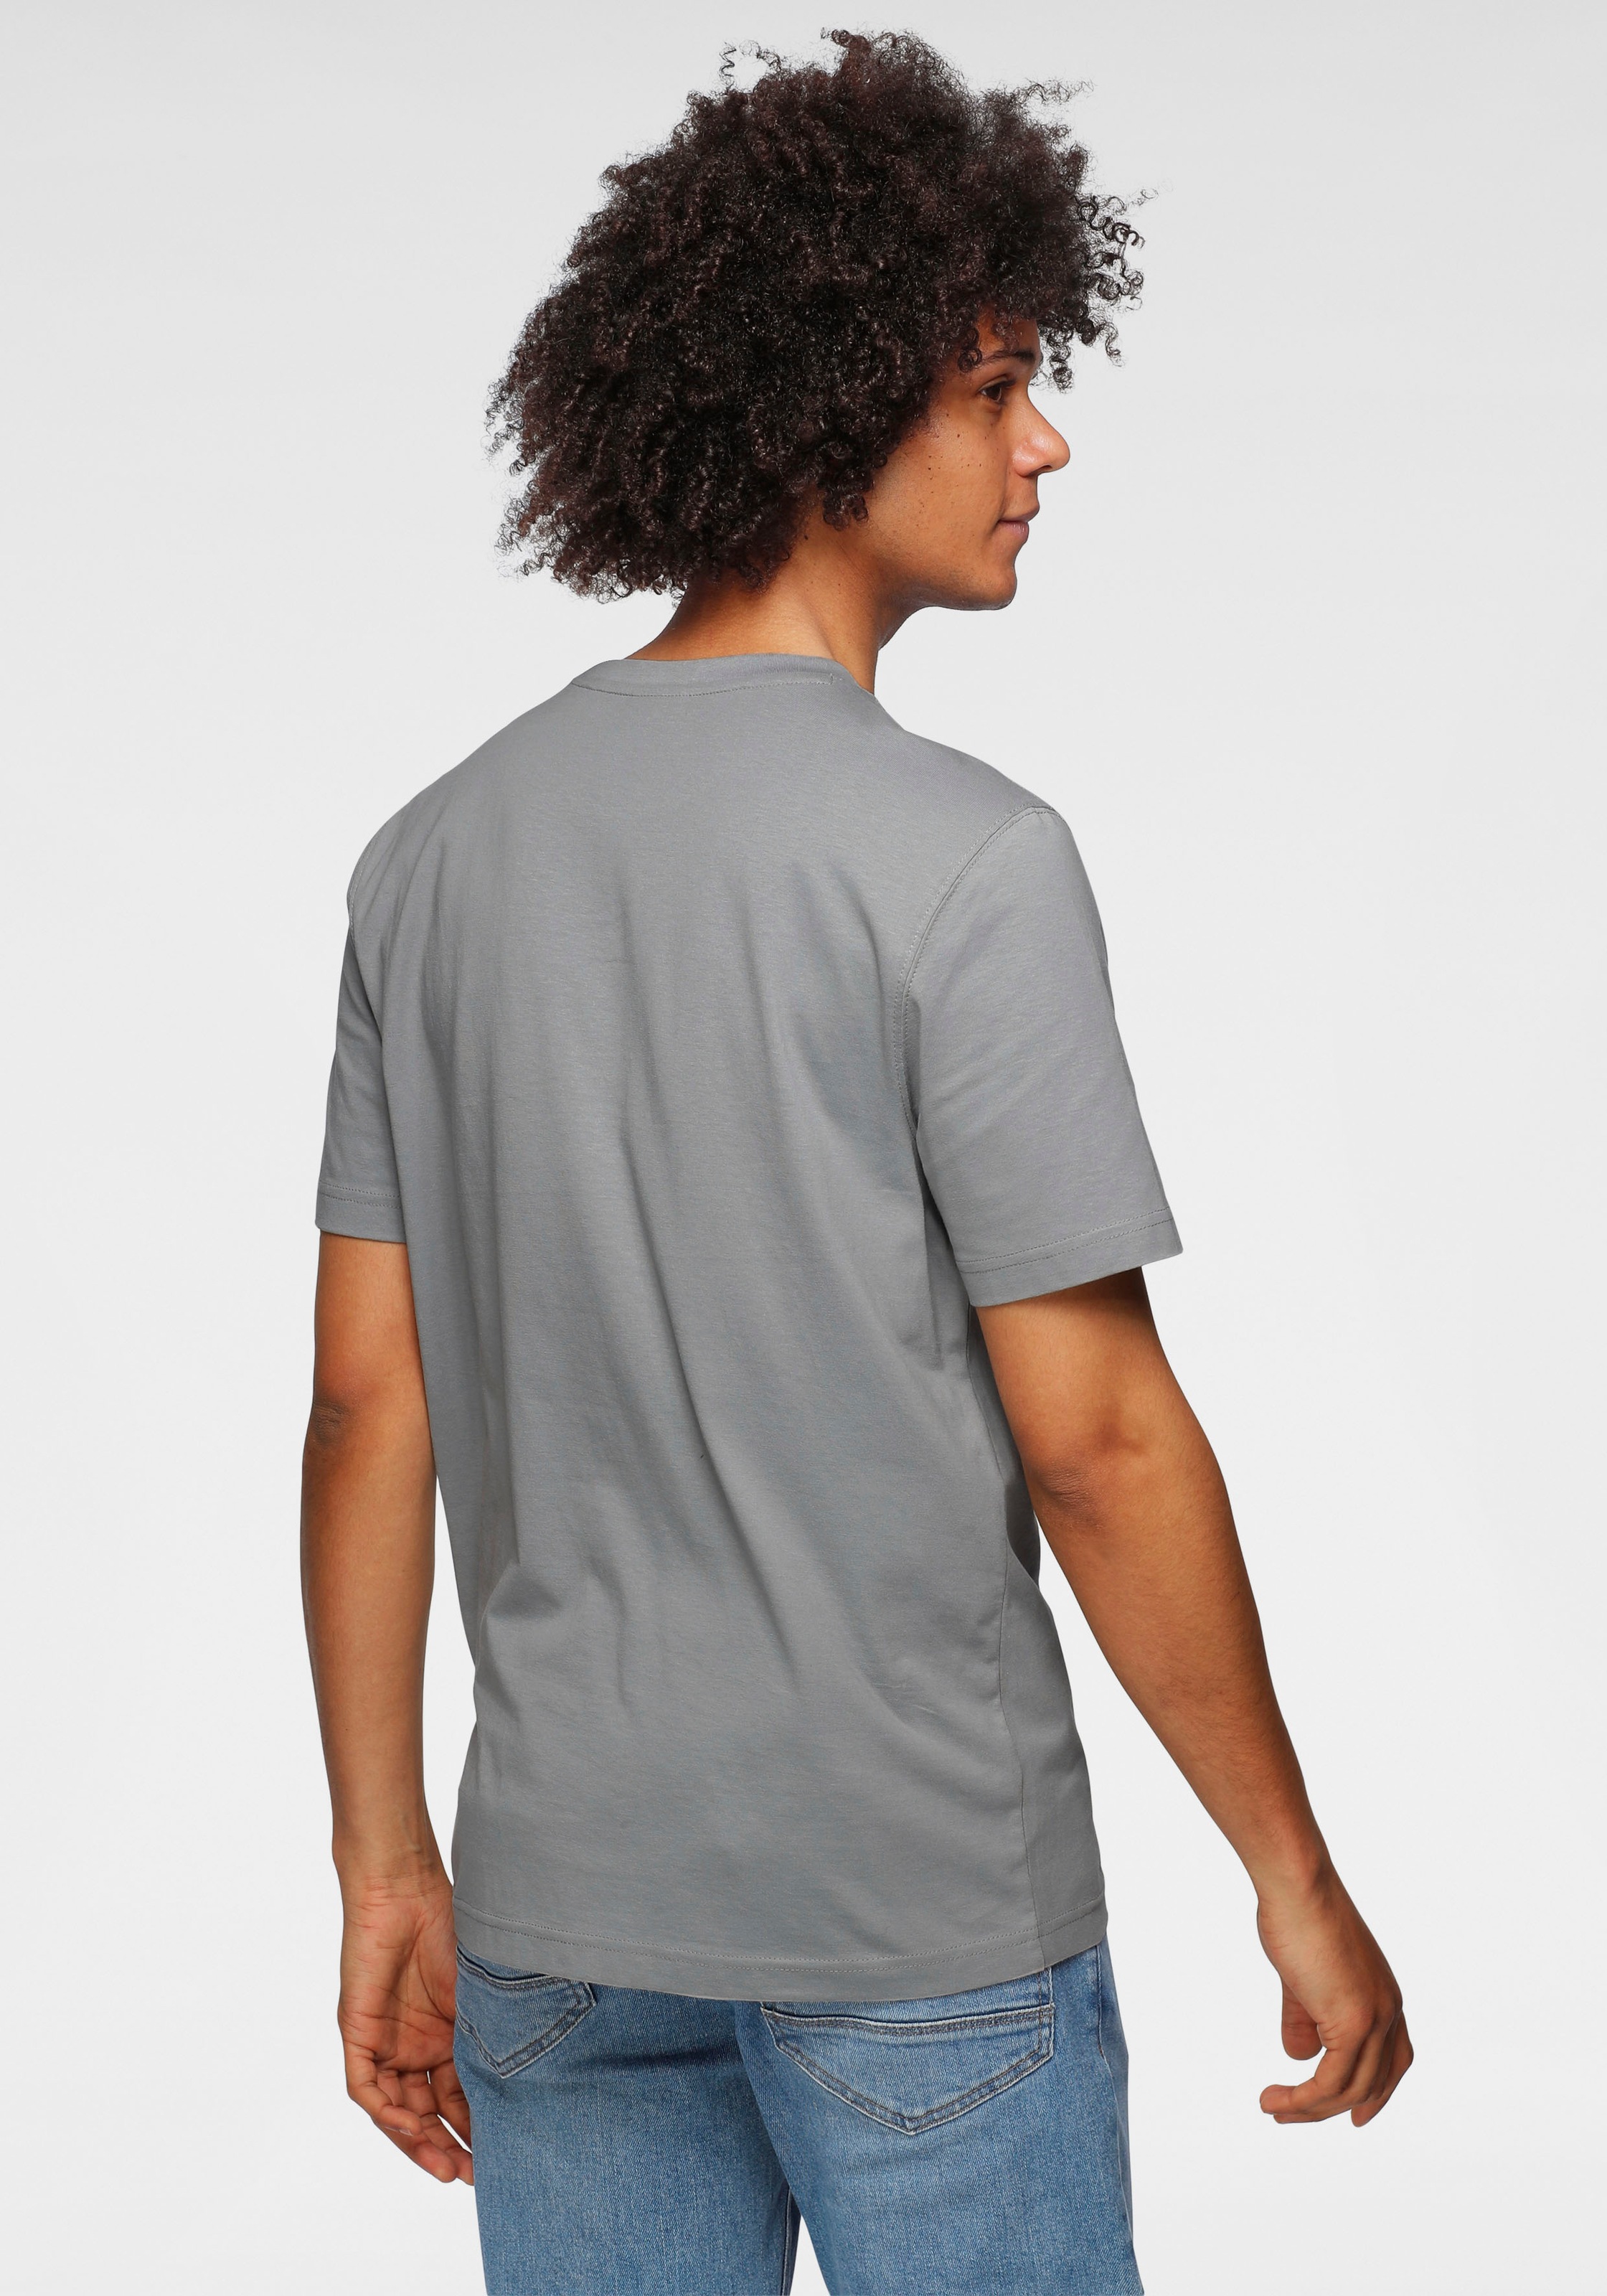 OTTO products T-Shirt günstig mit zertifiziert »GOTS Bio-Baumwolle«, Brusttasche kaufen aus nachhaltig –